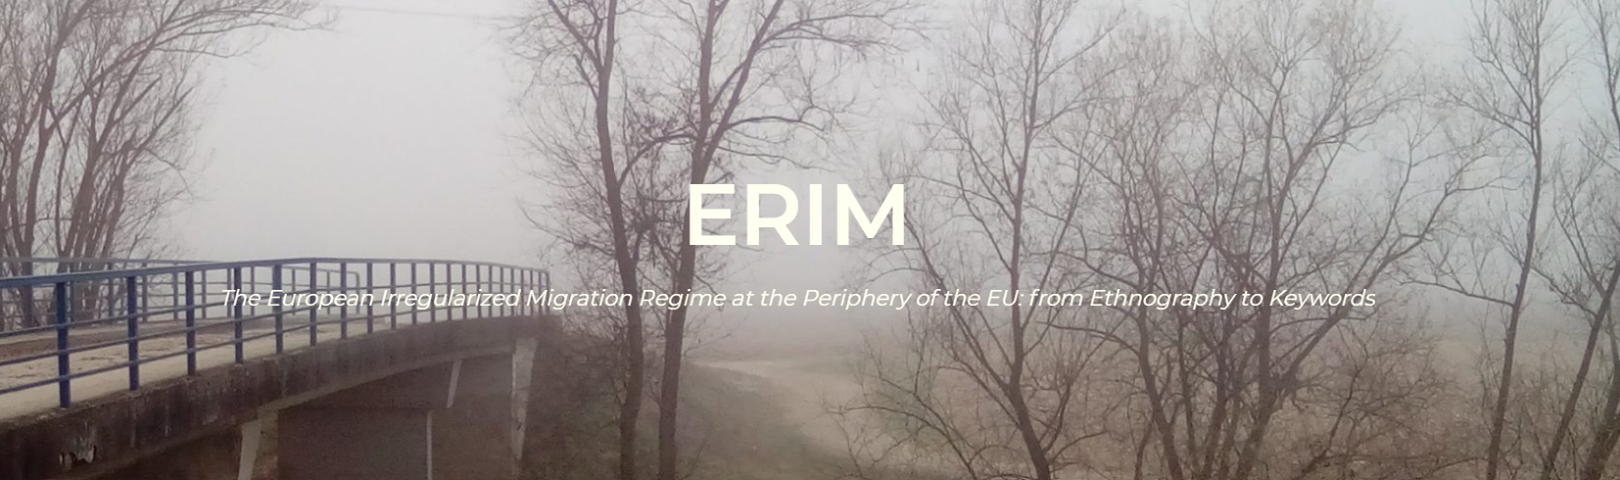 ERIM-ova radionica i predstavljanje ERIM-a u Ljubljani